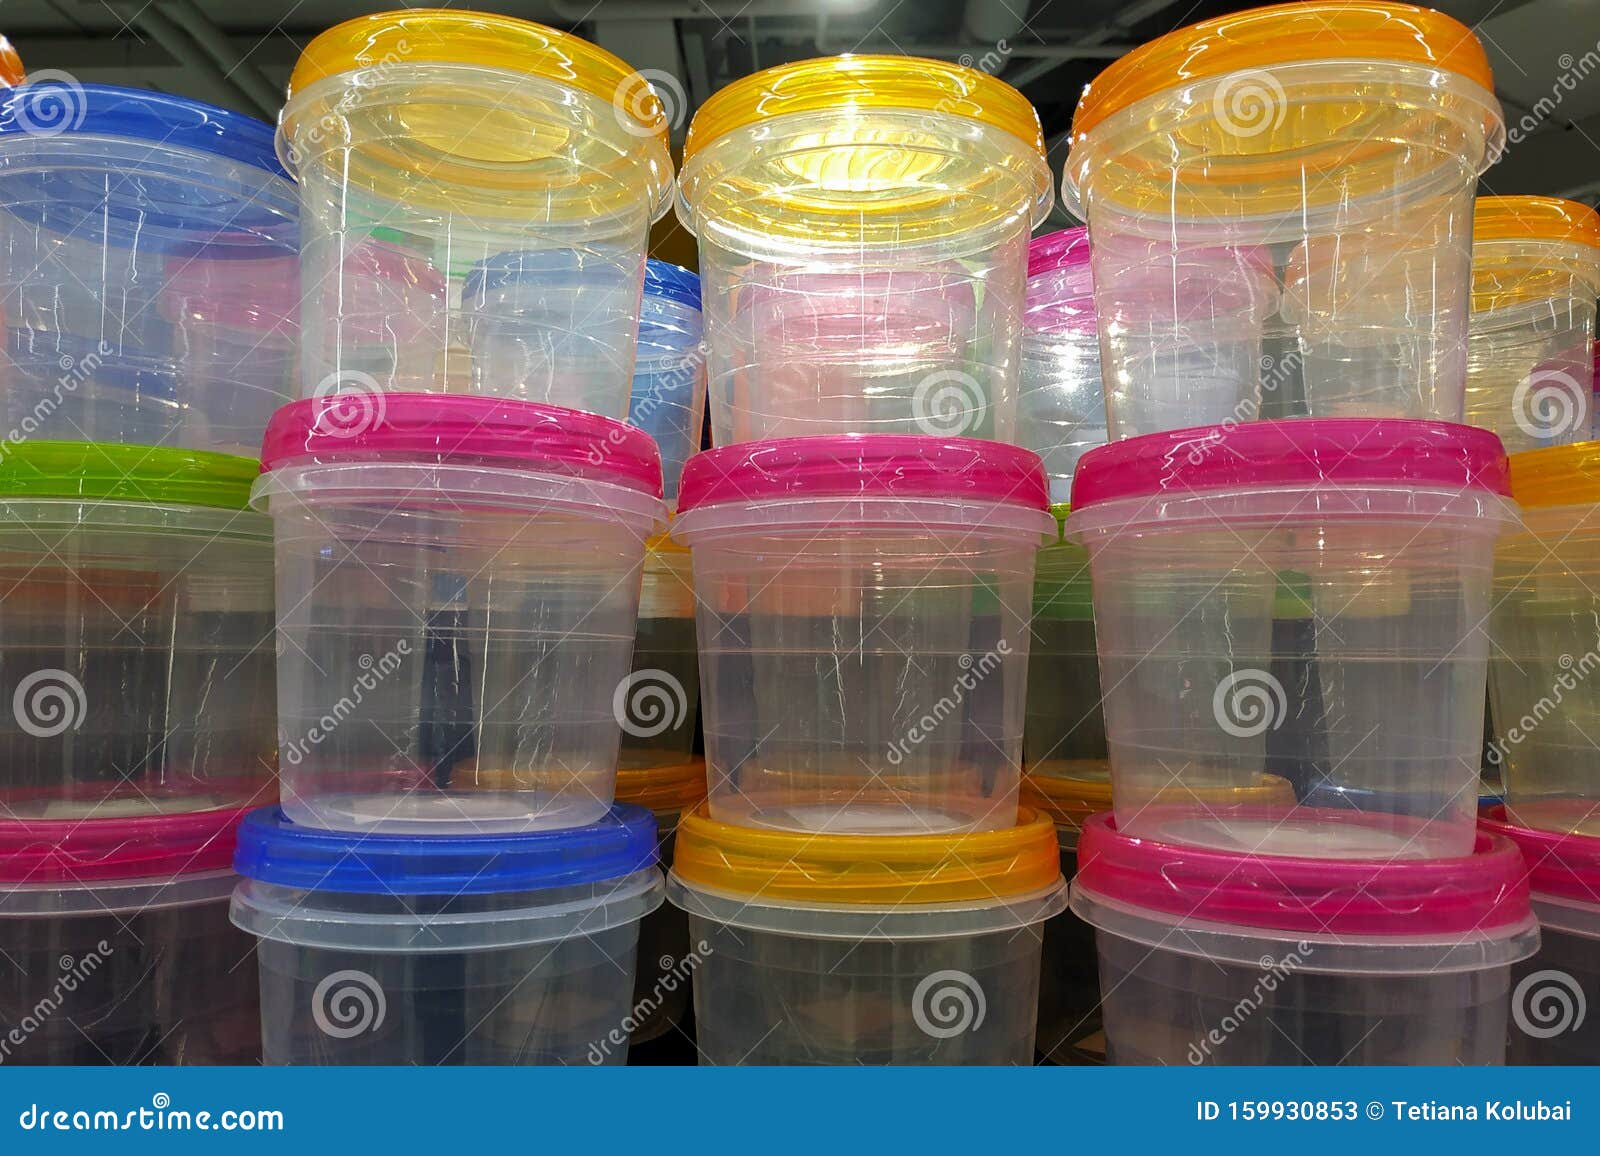 Recipientes De Plástico Transparente Para Alimentos Con Tapas Apiladas En Una Pila Imagen de archivo - Imagen de productos, envase: 159930853